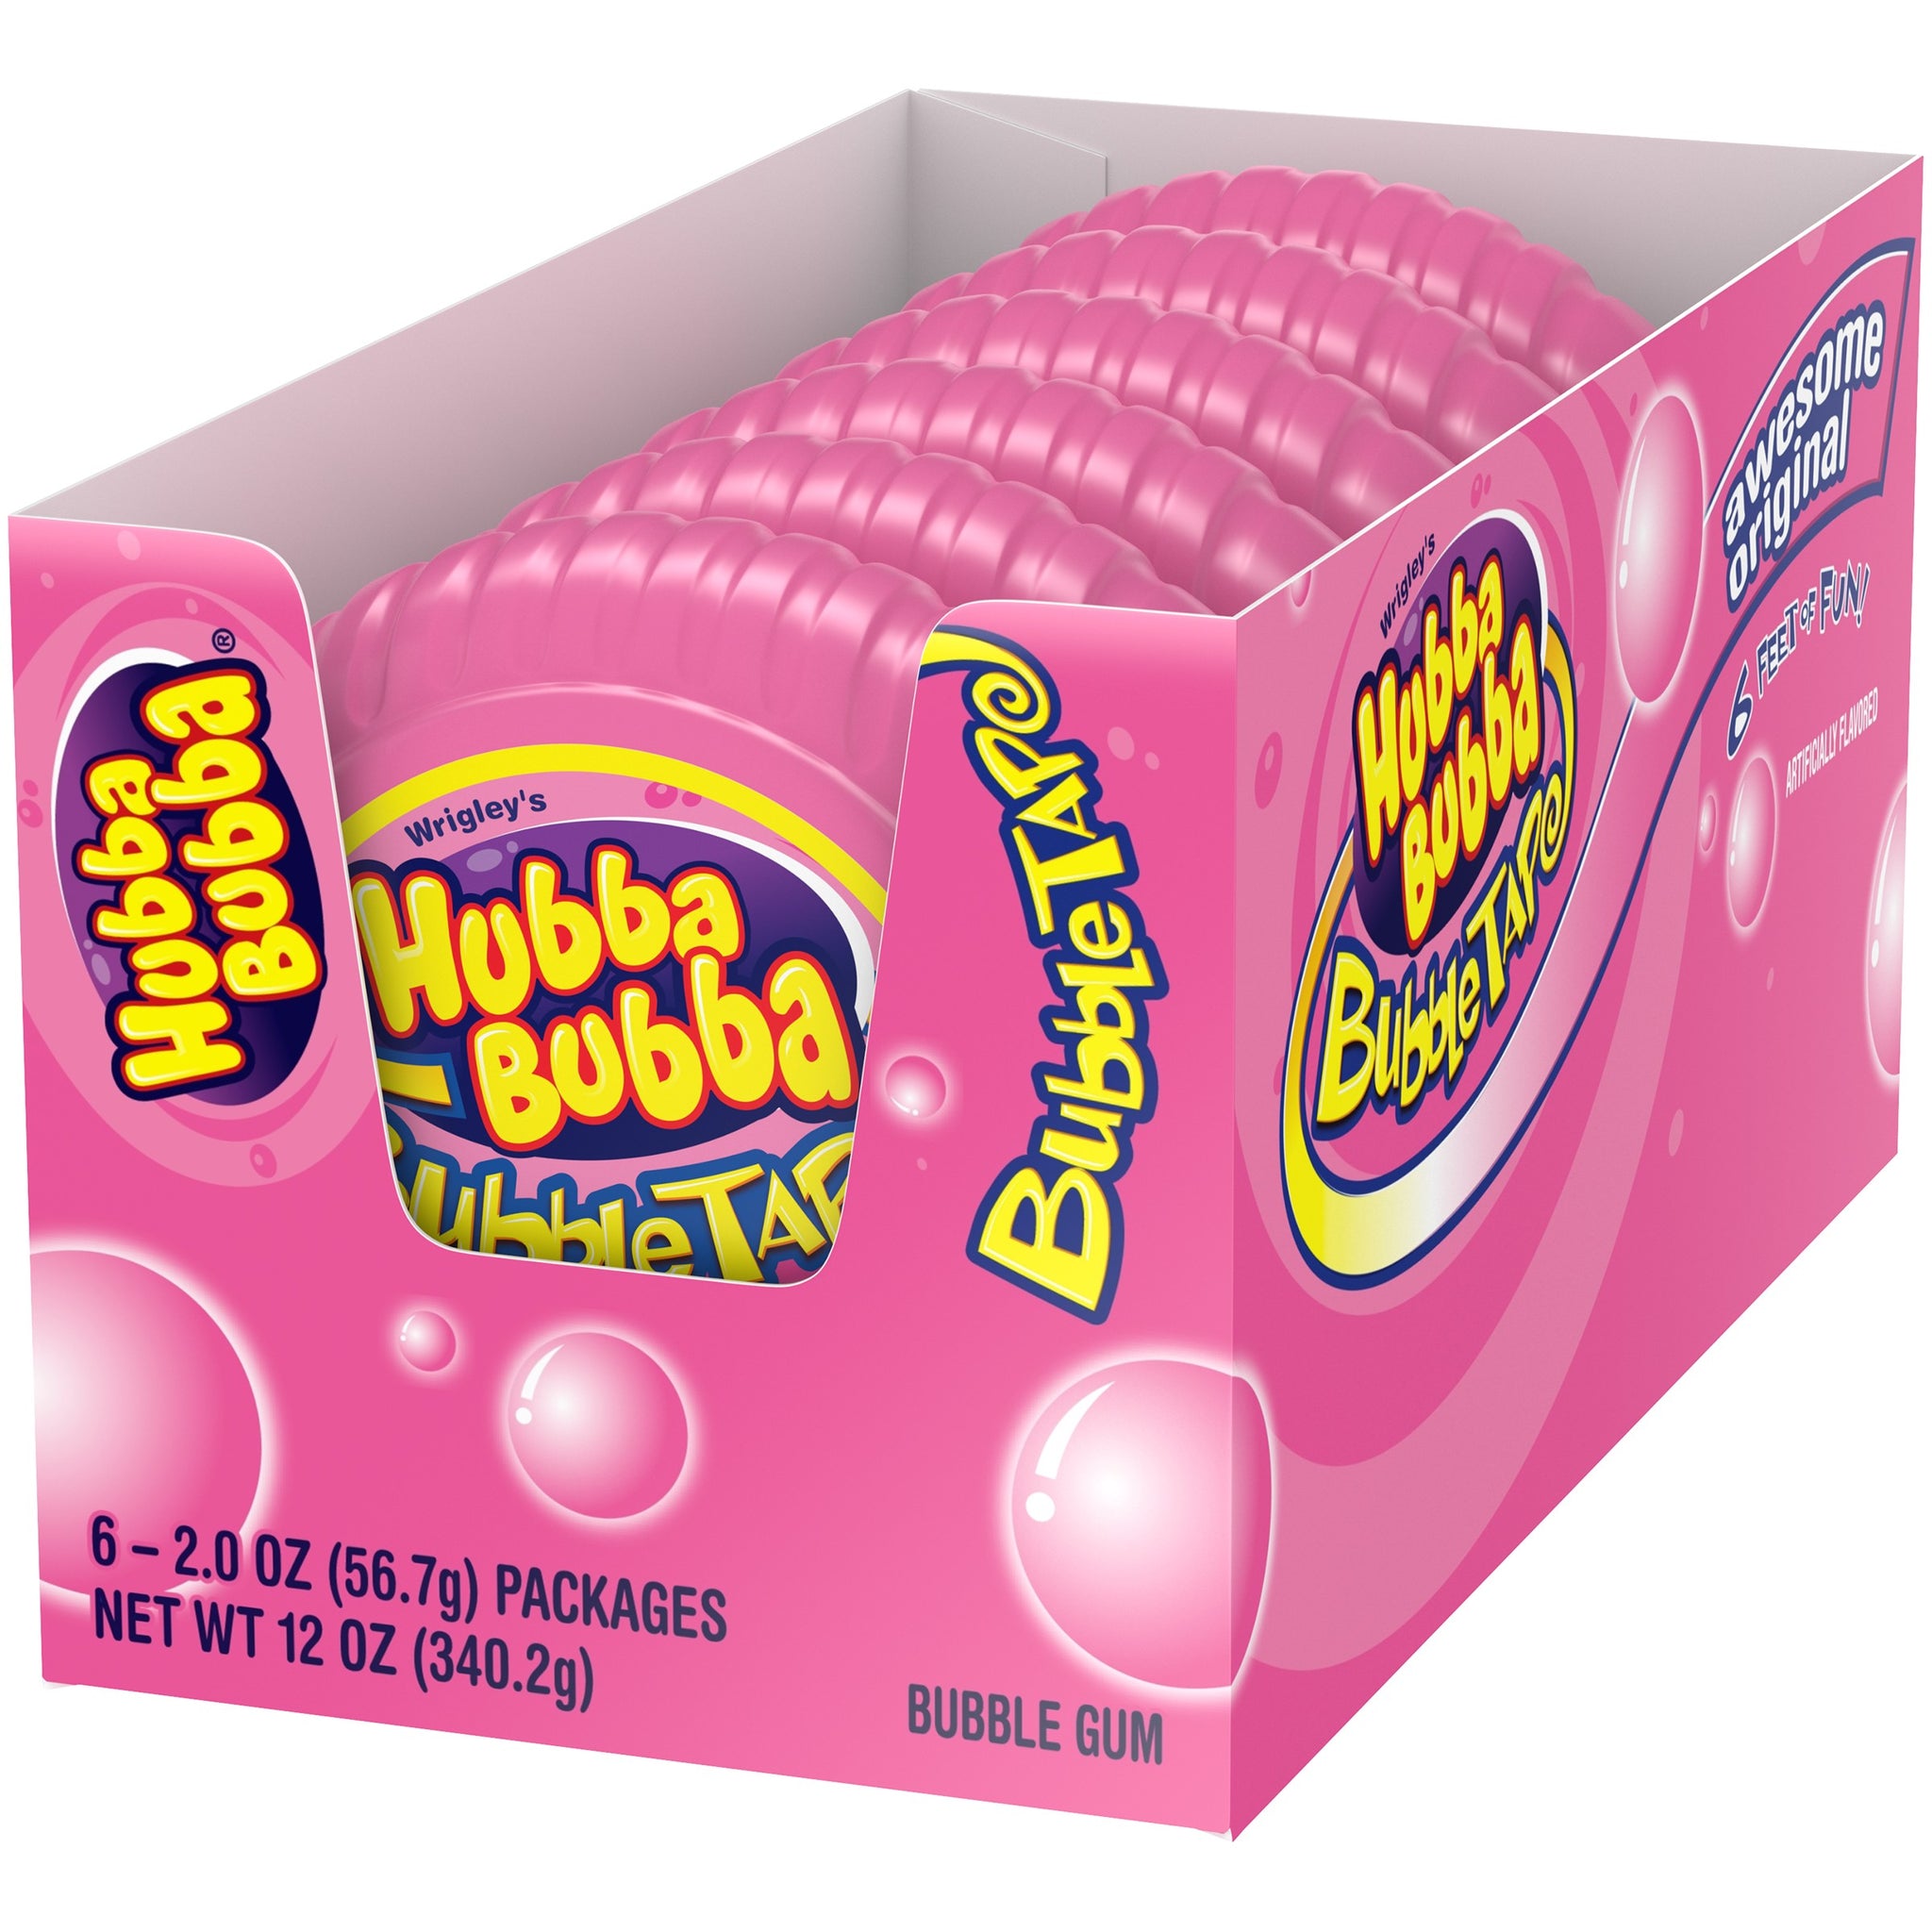 Hubba Bubba Gum Hubba Bubba Original Bubble Tape and Hubba Bubba Sour Blue Raspberry Bubble Tape Bundle | 6 Feet of Gum Each Tape | 2 Original Flavor